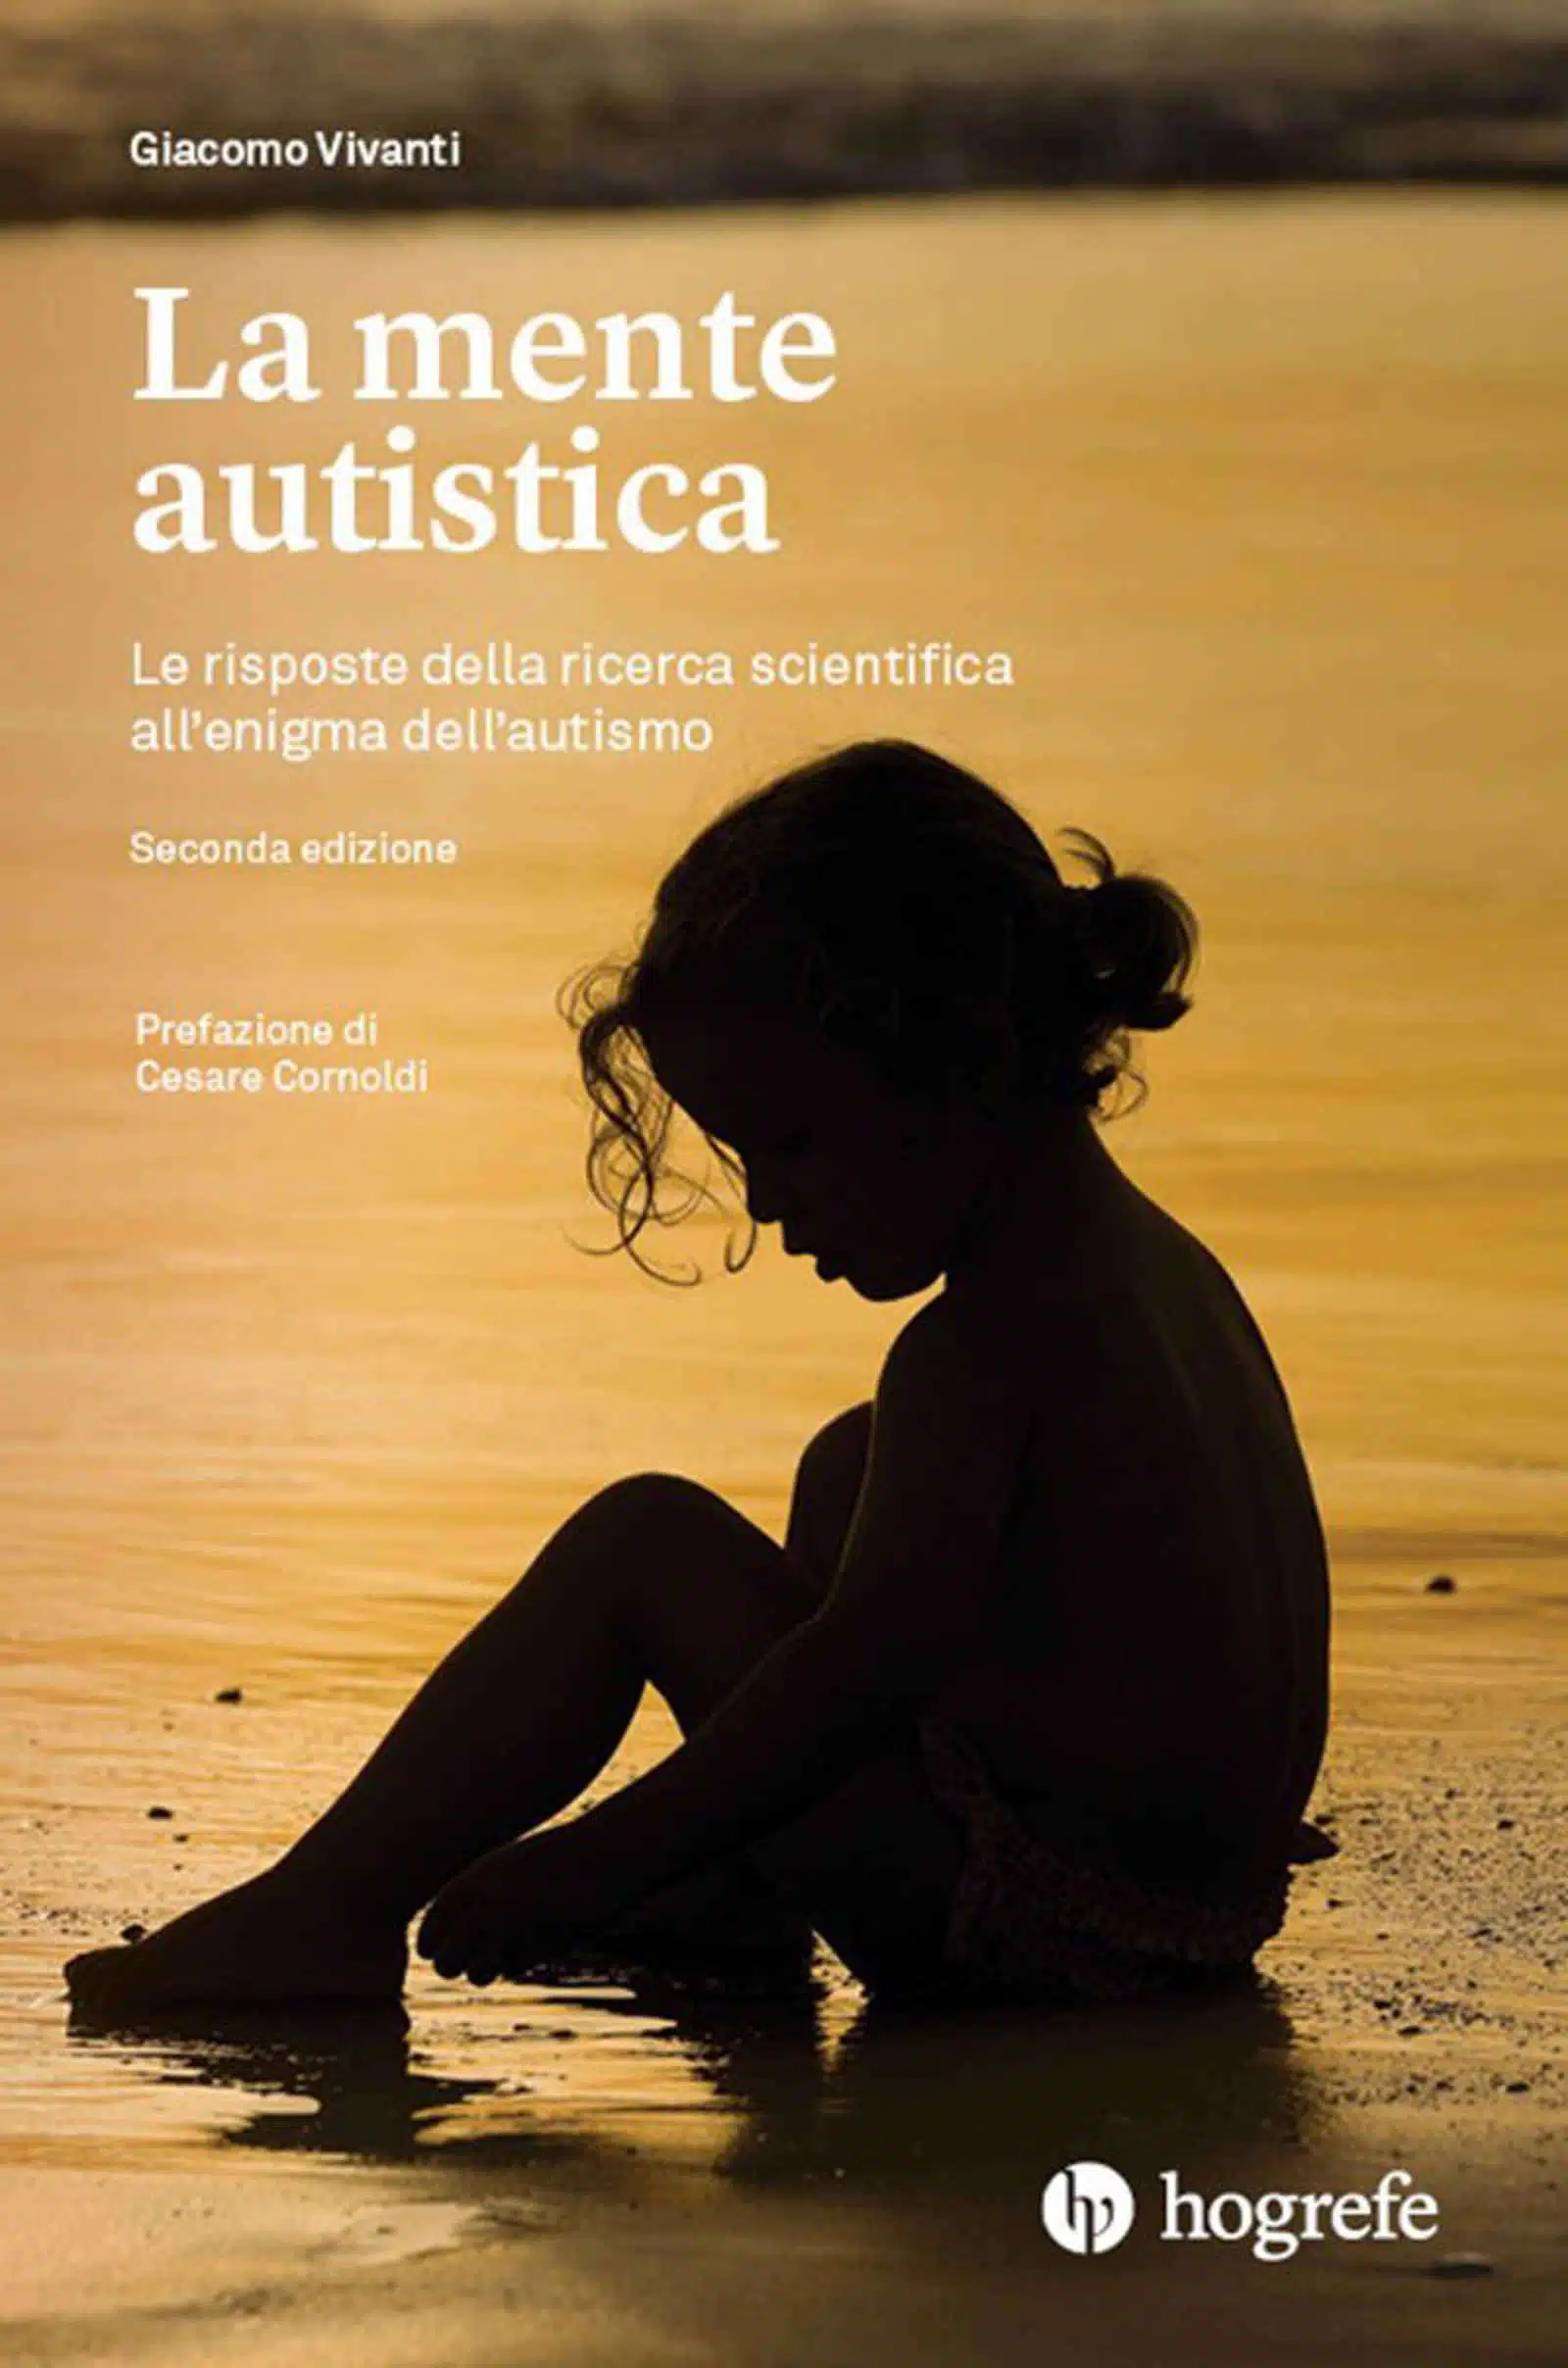 La mente autistica 2021 di Giacomo Vivanti Recensione del libro Featured